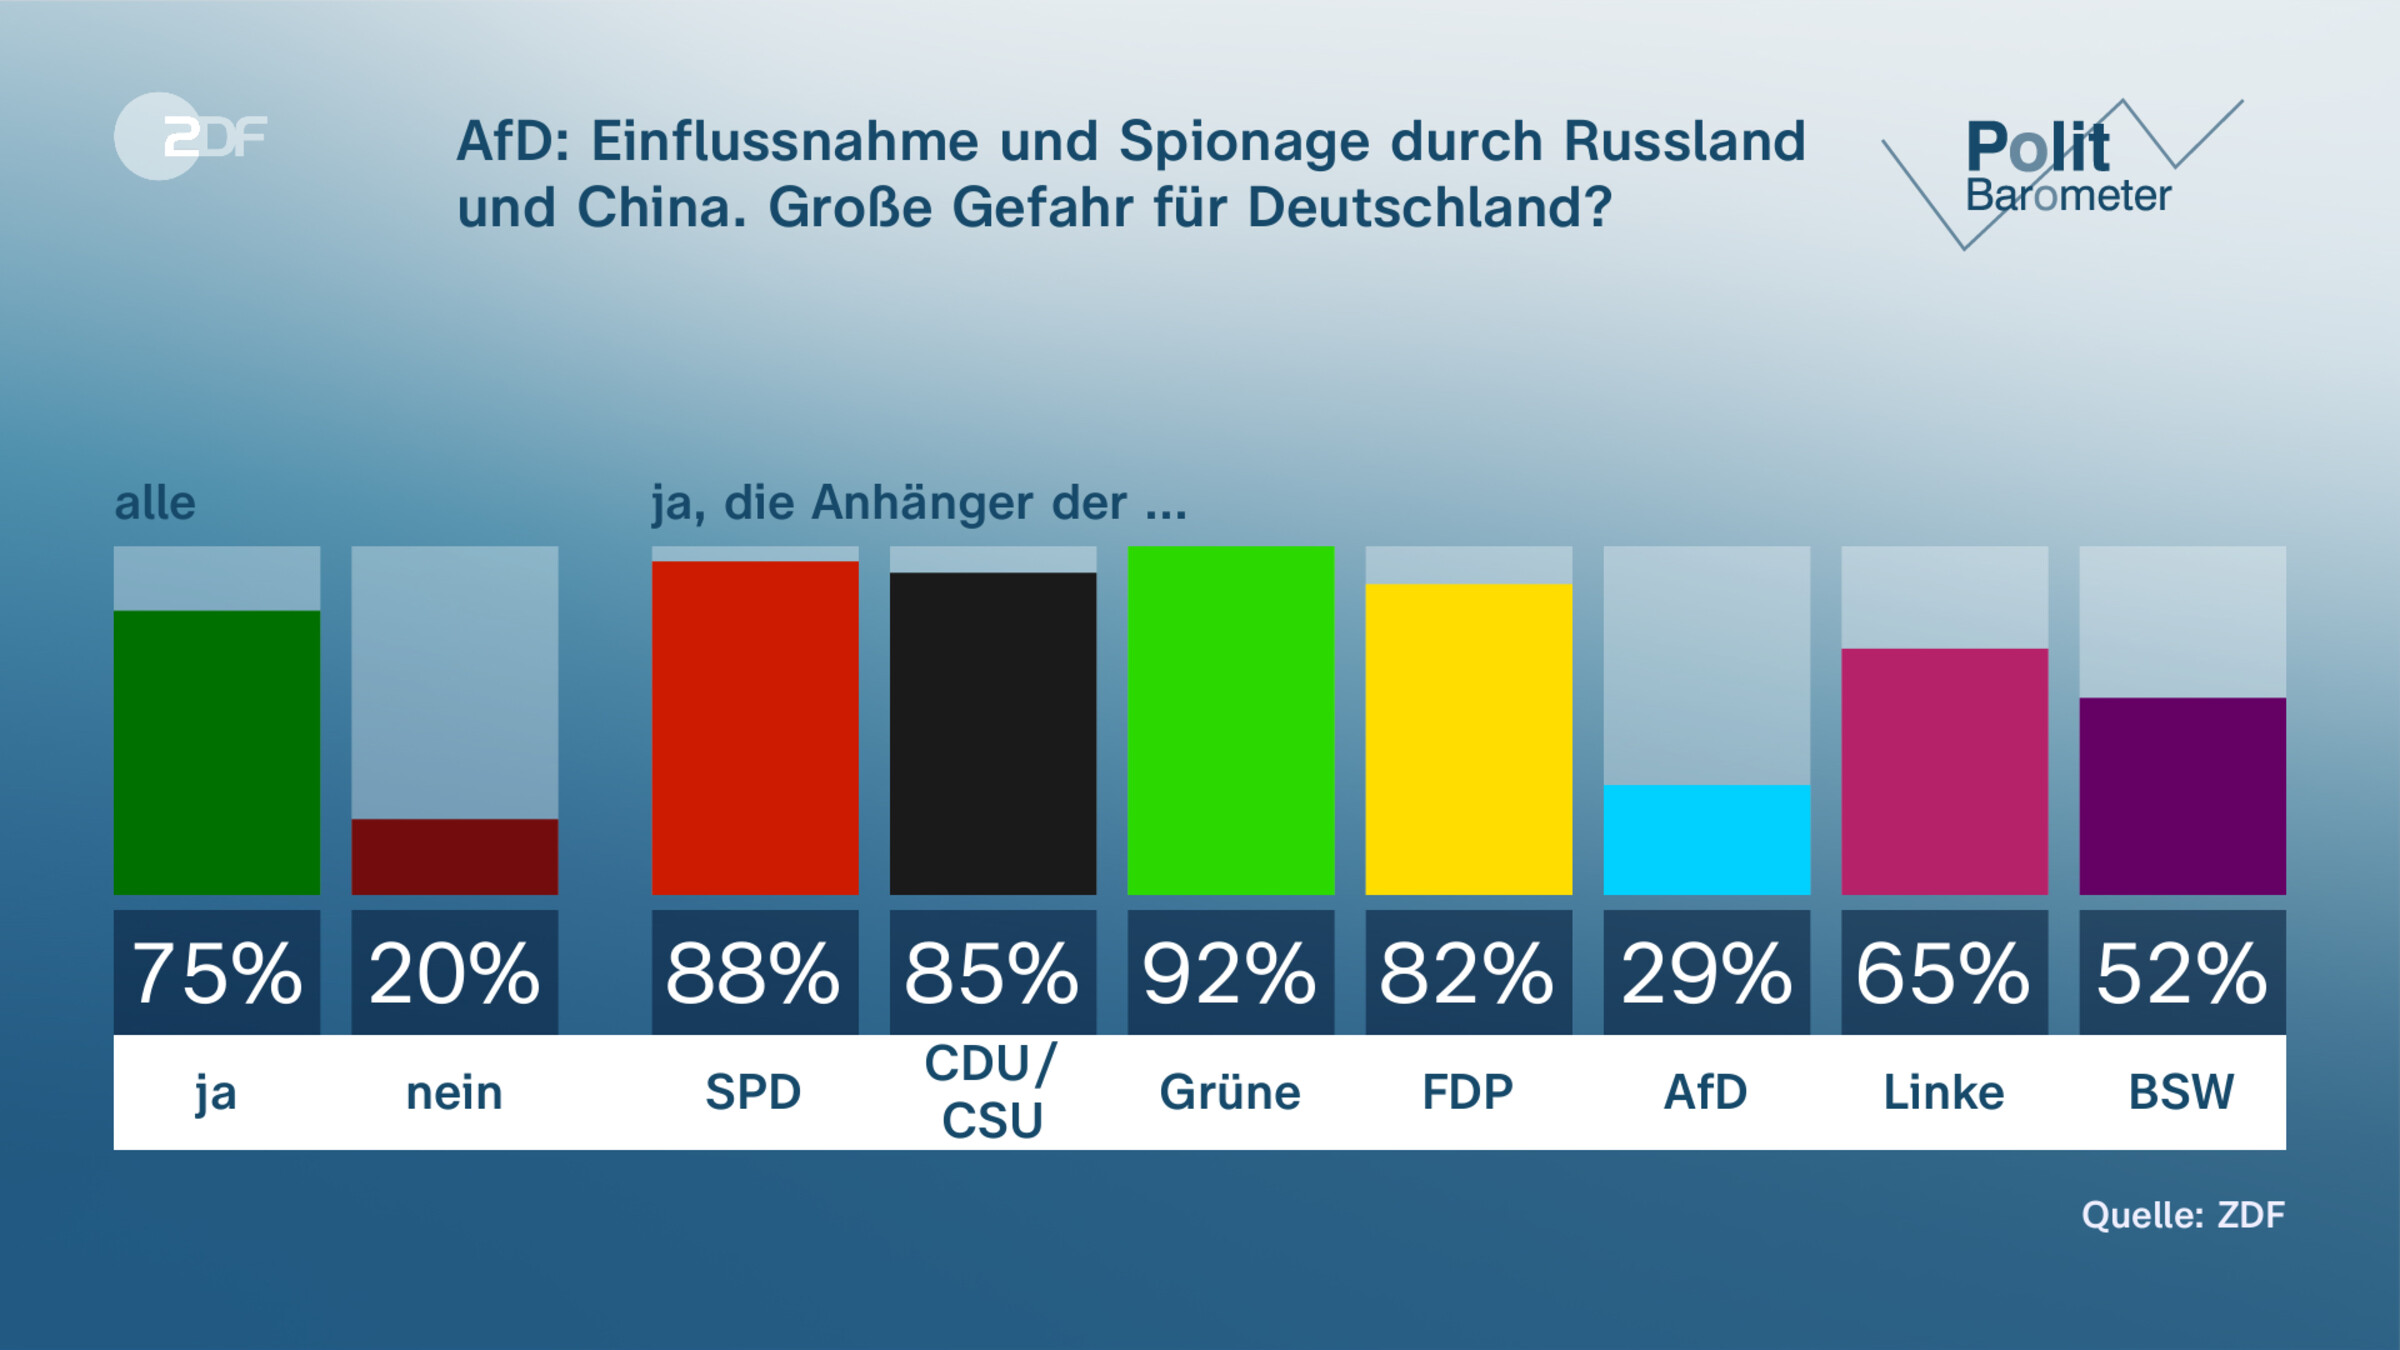 AfD: Einflussnahme und Spionage durch Russland und China. Große Gefahr für Deutschland?